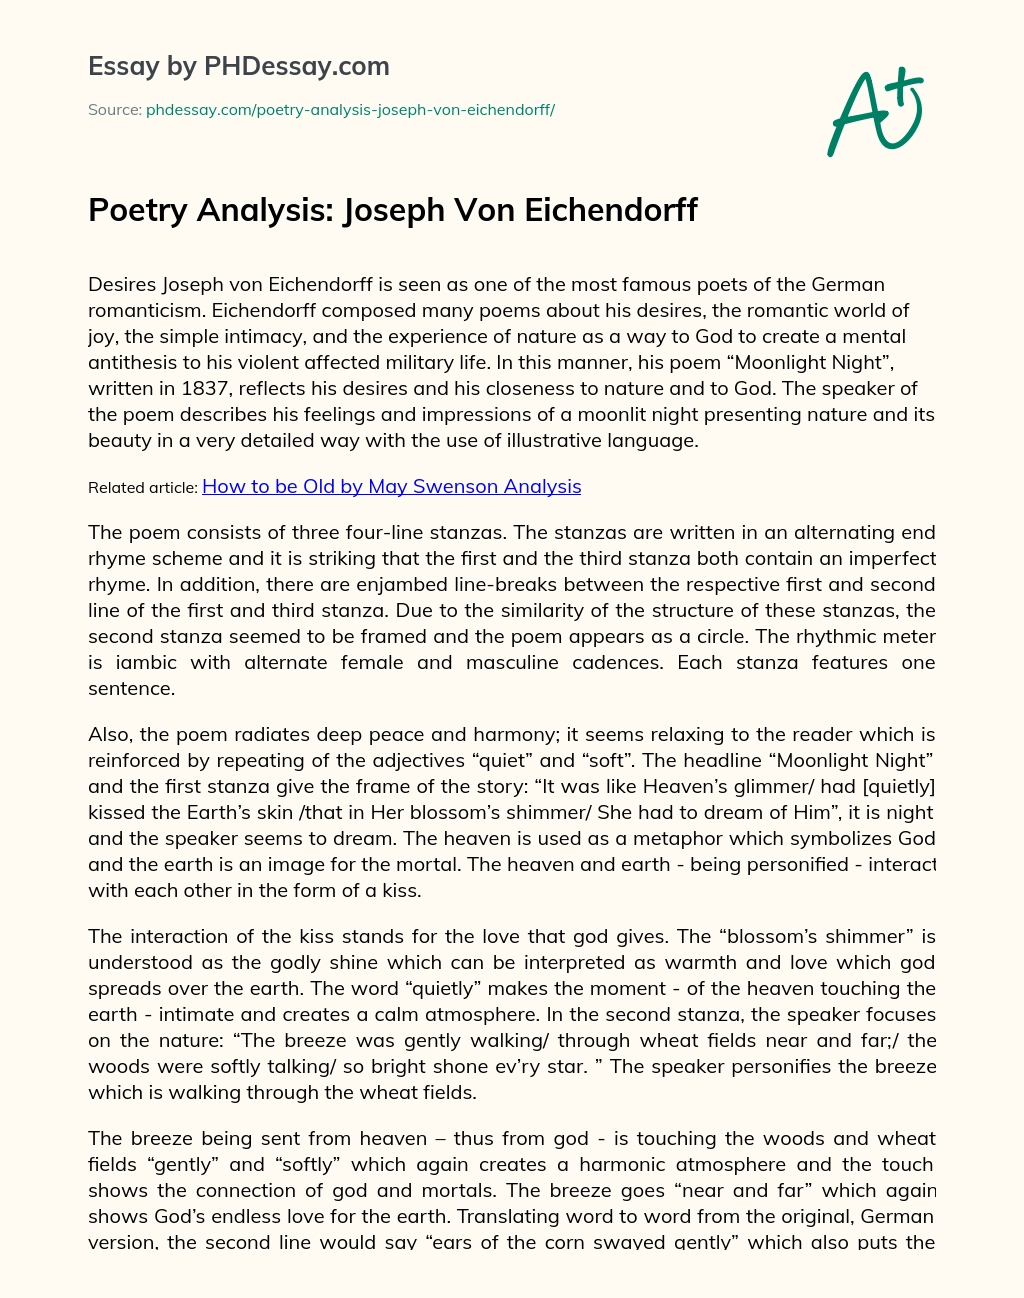 Poetry Analysis: Joseph Von Eichendorff essay